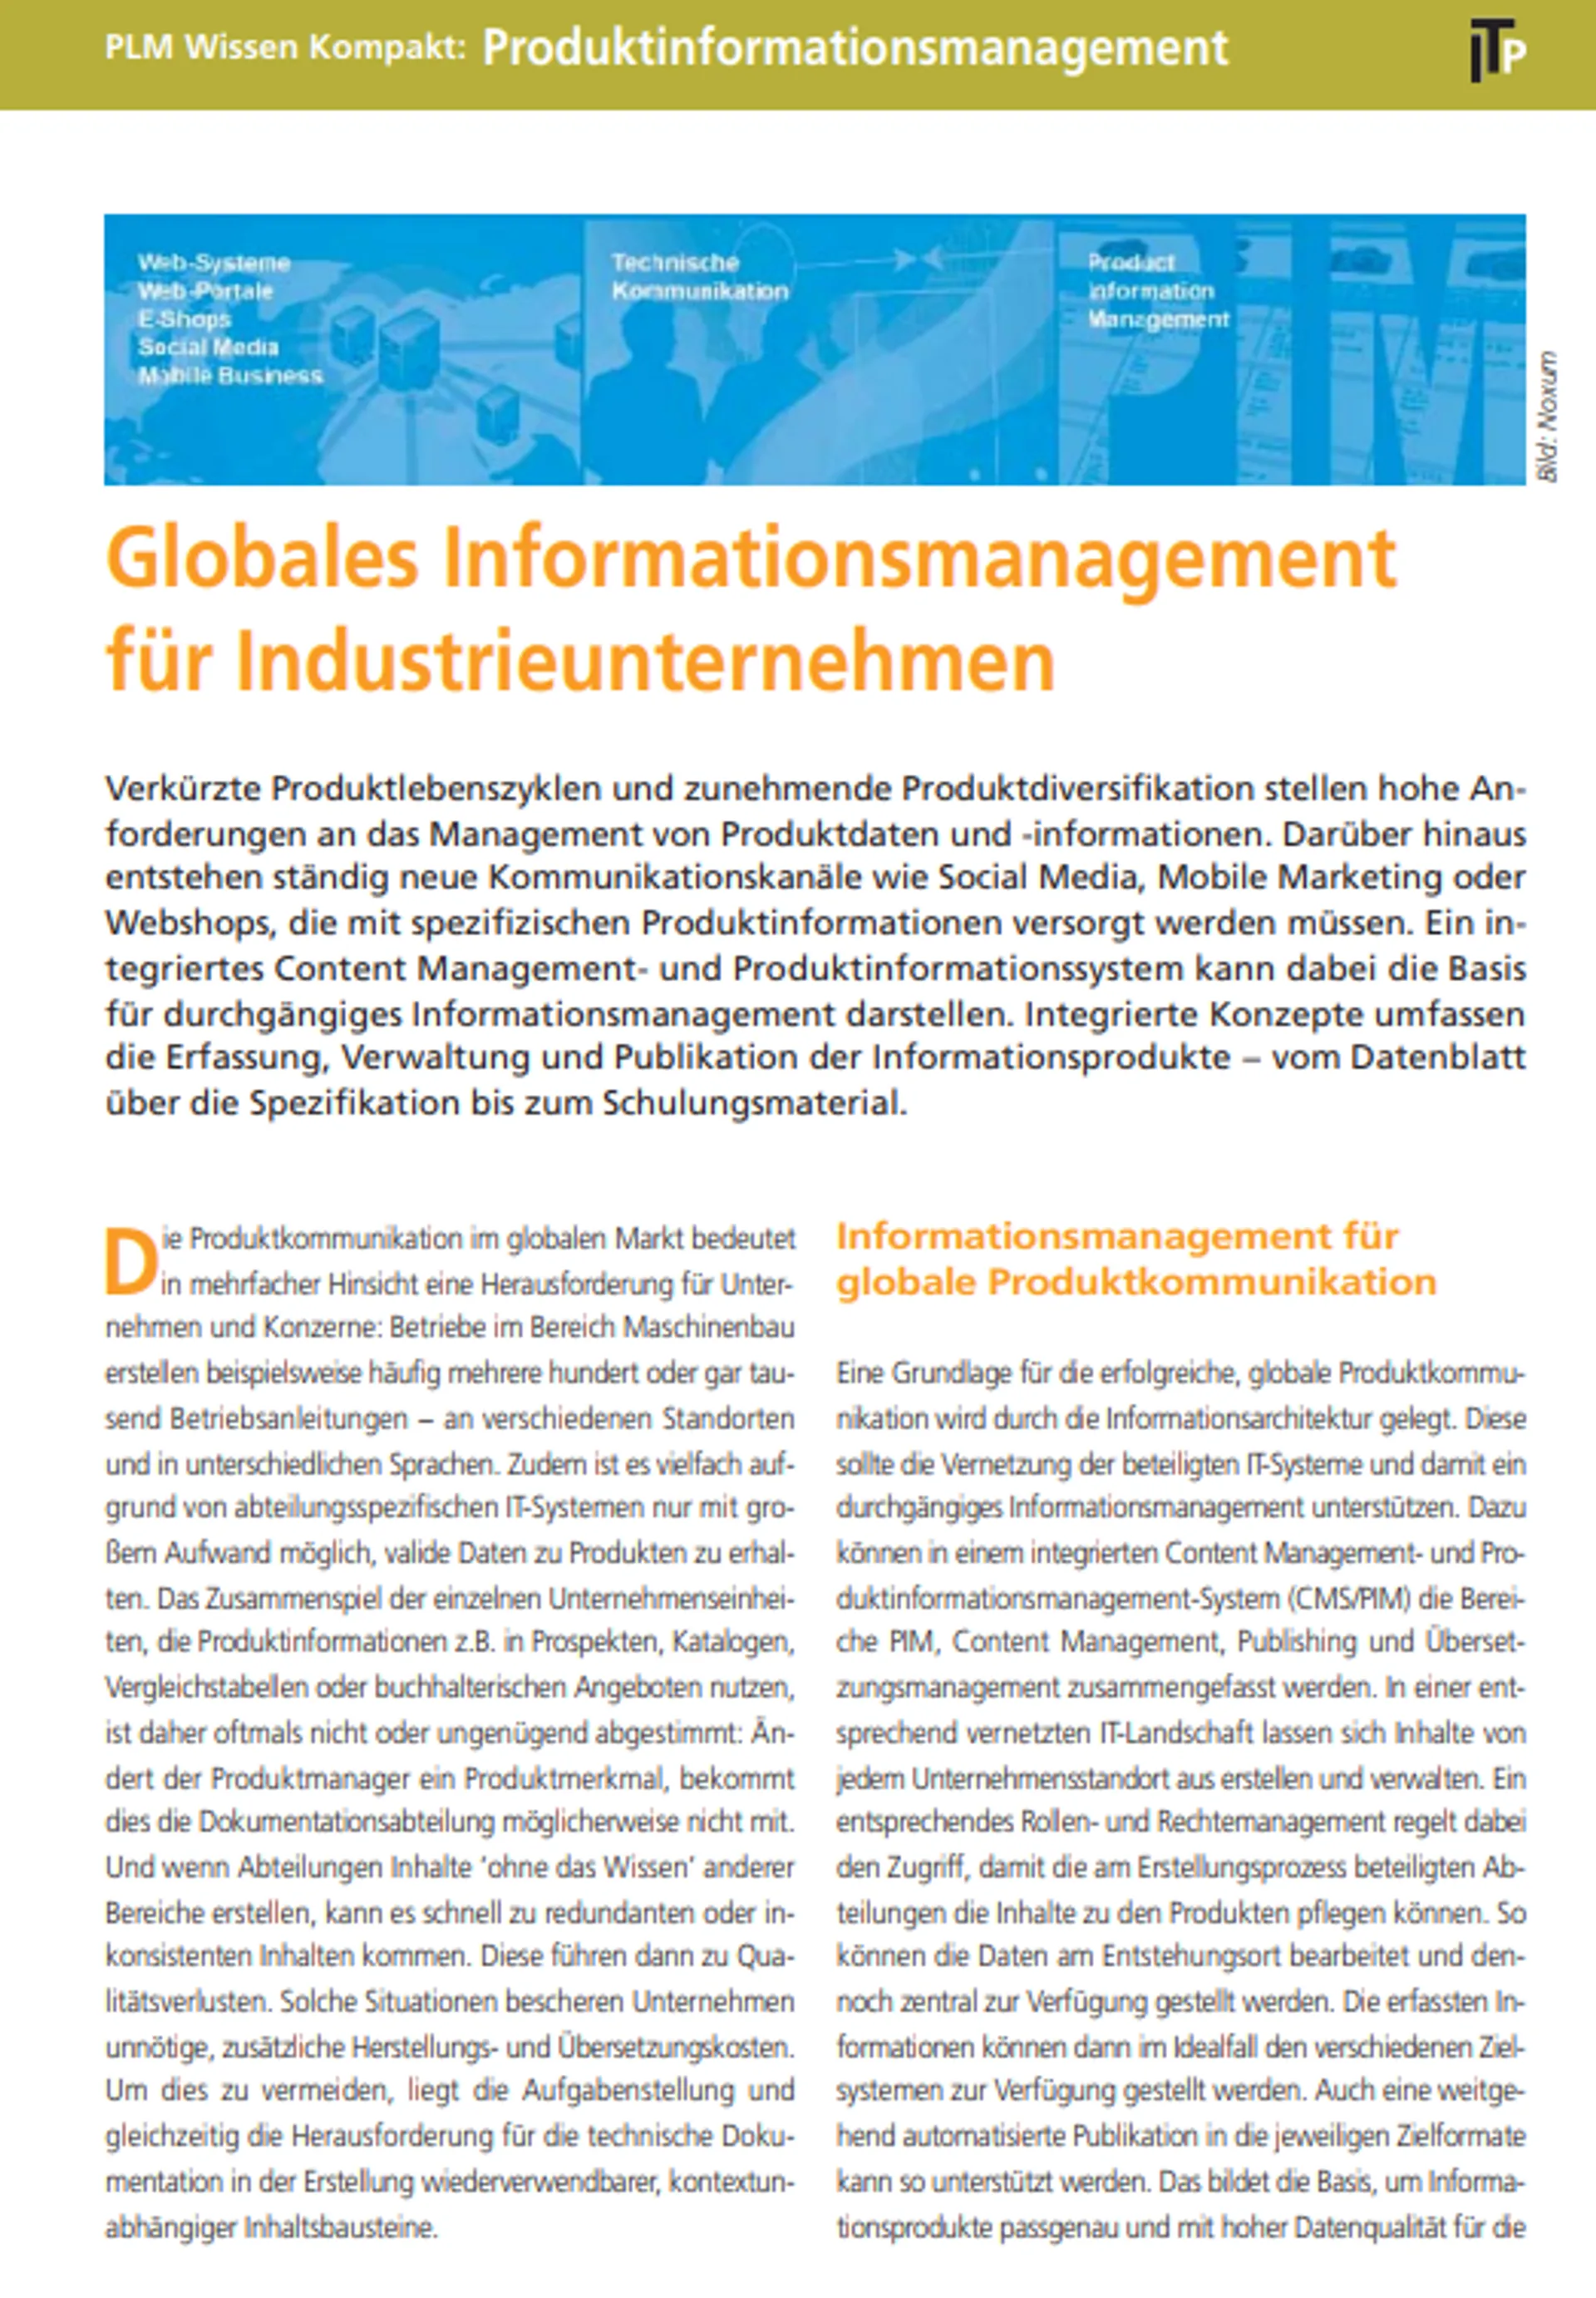 Globales Informationsmanagement für Industrieunternehmen